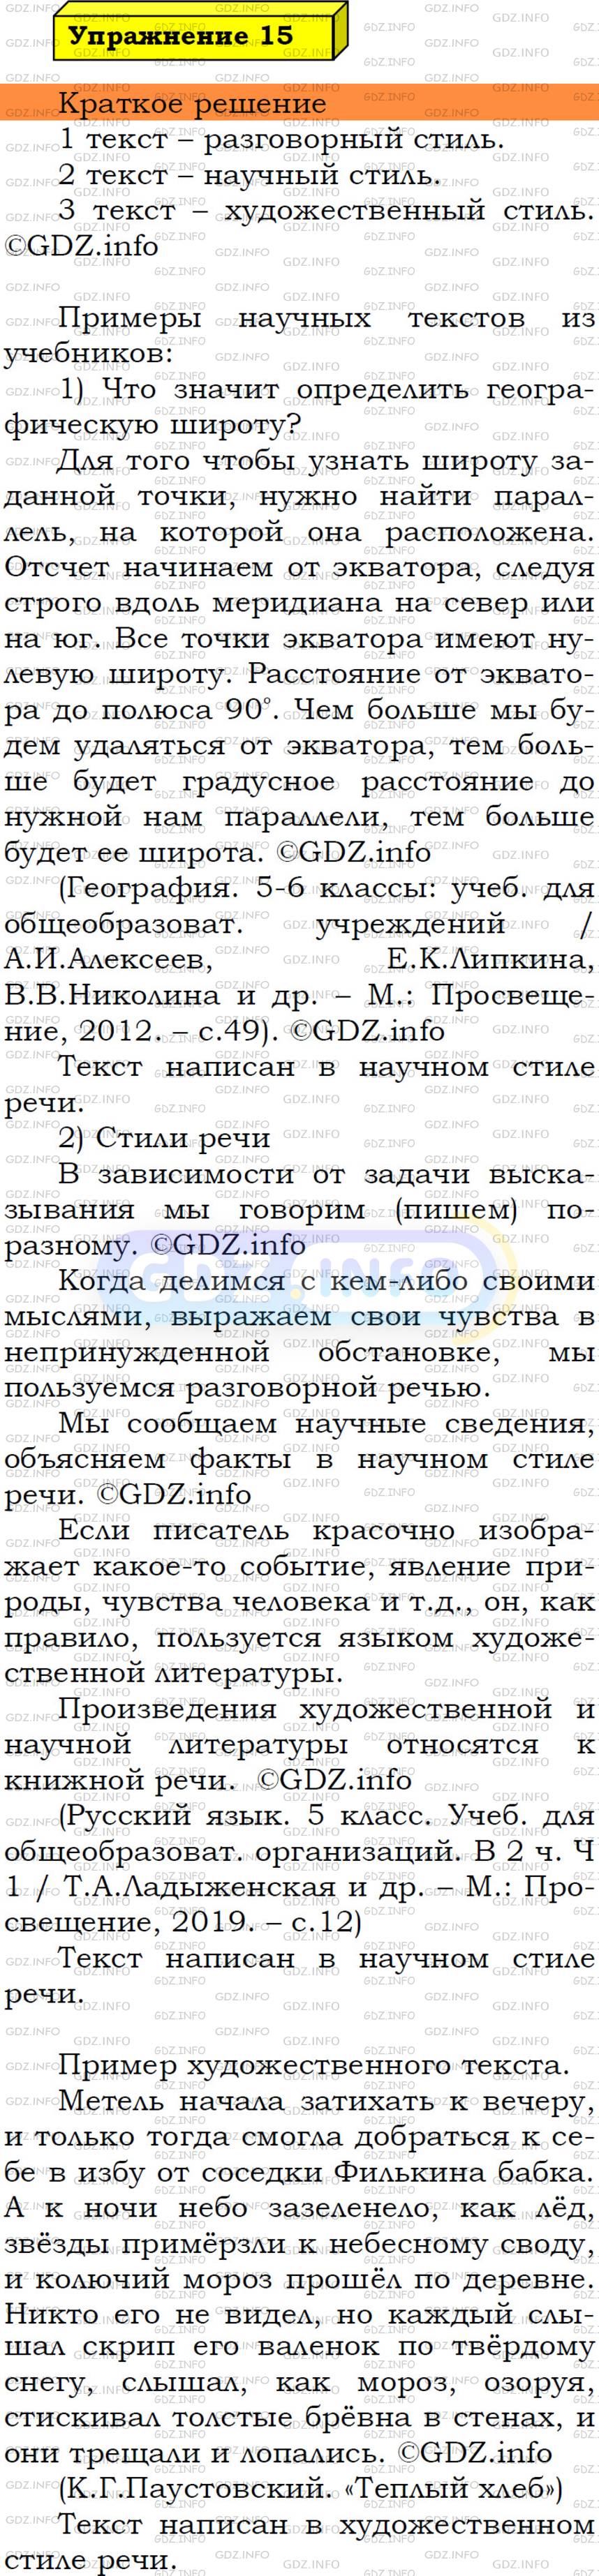 Фото решения 3: Номер №15 из ГДЗ по Русскому языку 5 класс: Ладыженская Т.А. 2019г.